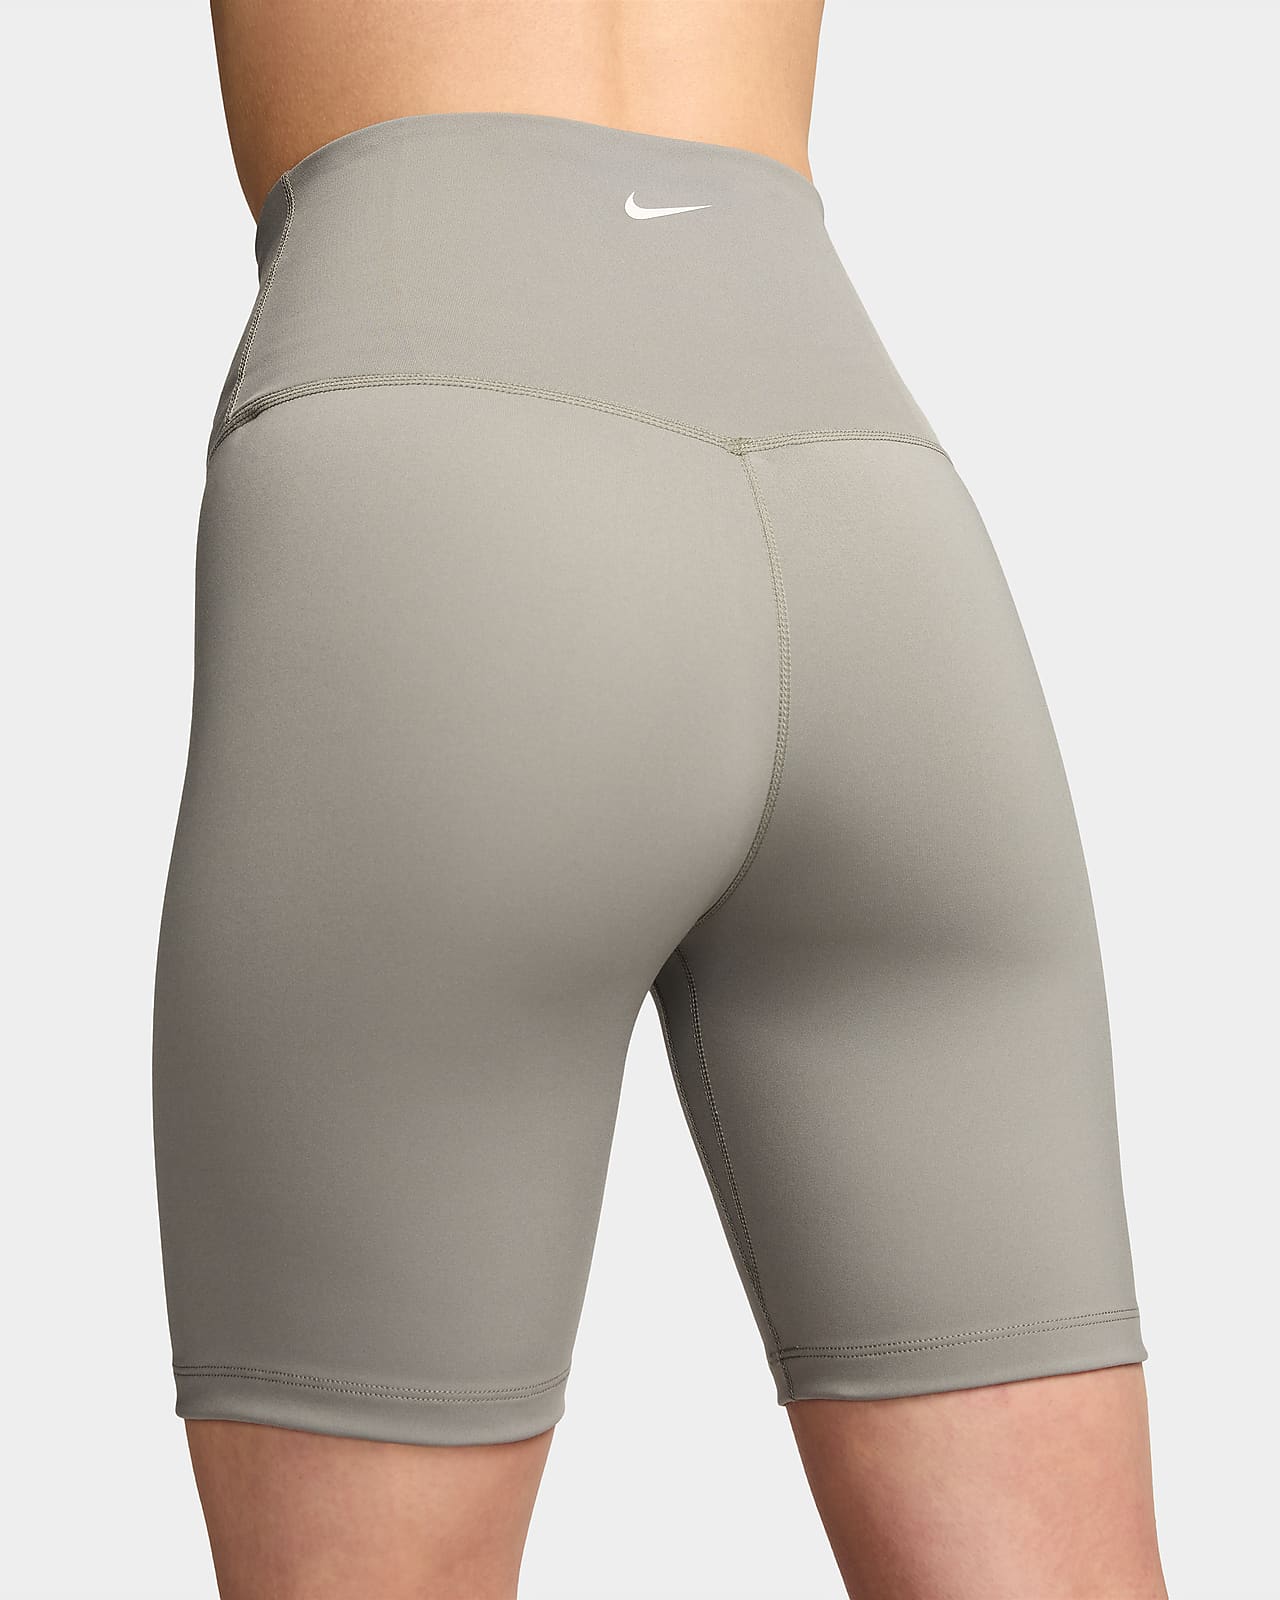 Women's Grey Shorts. Nike CA